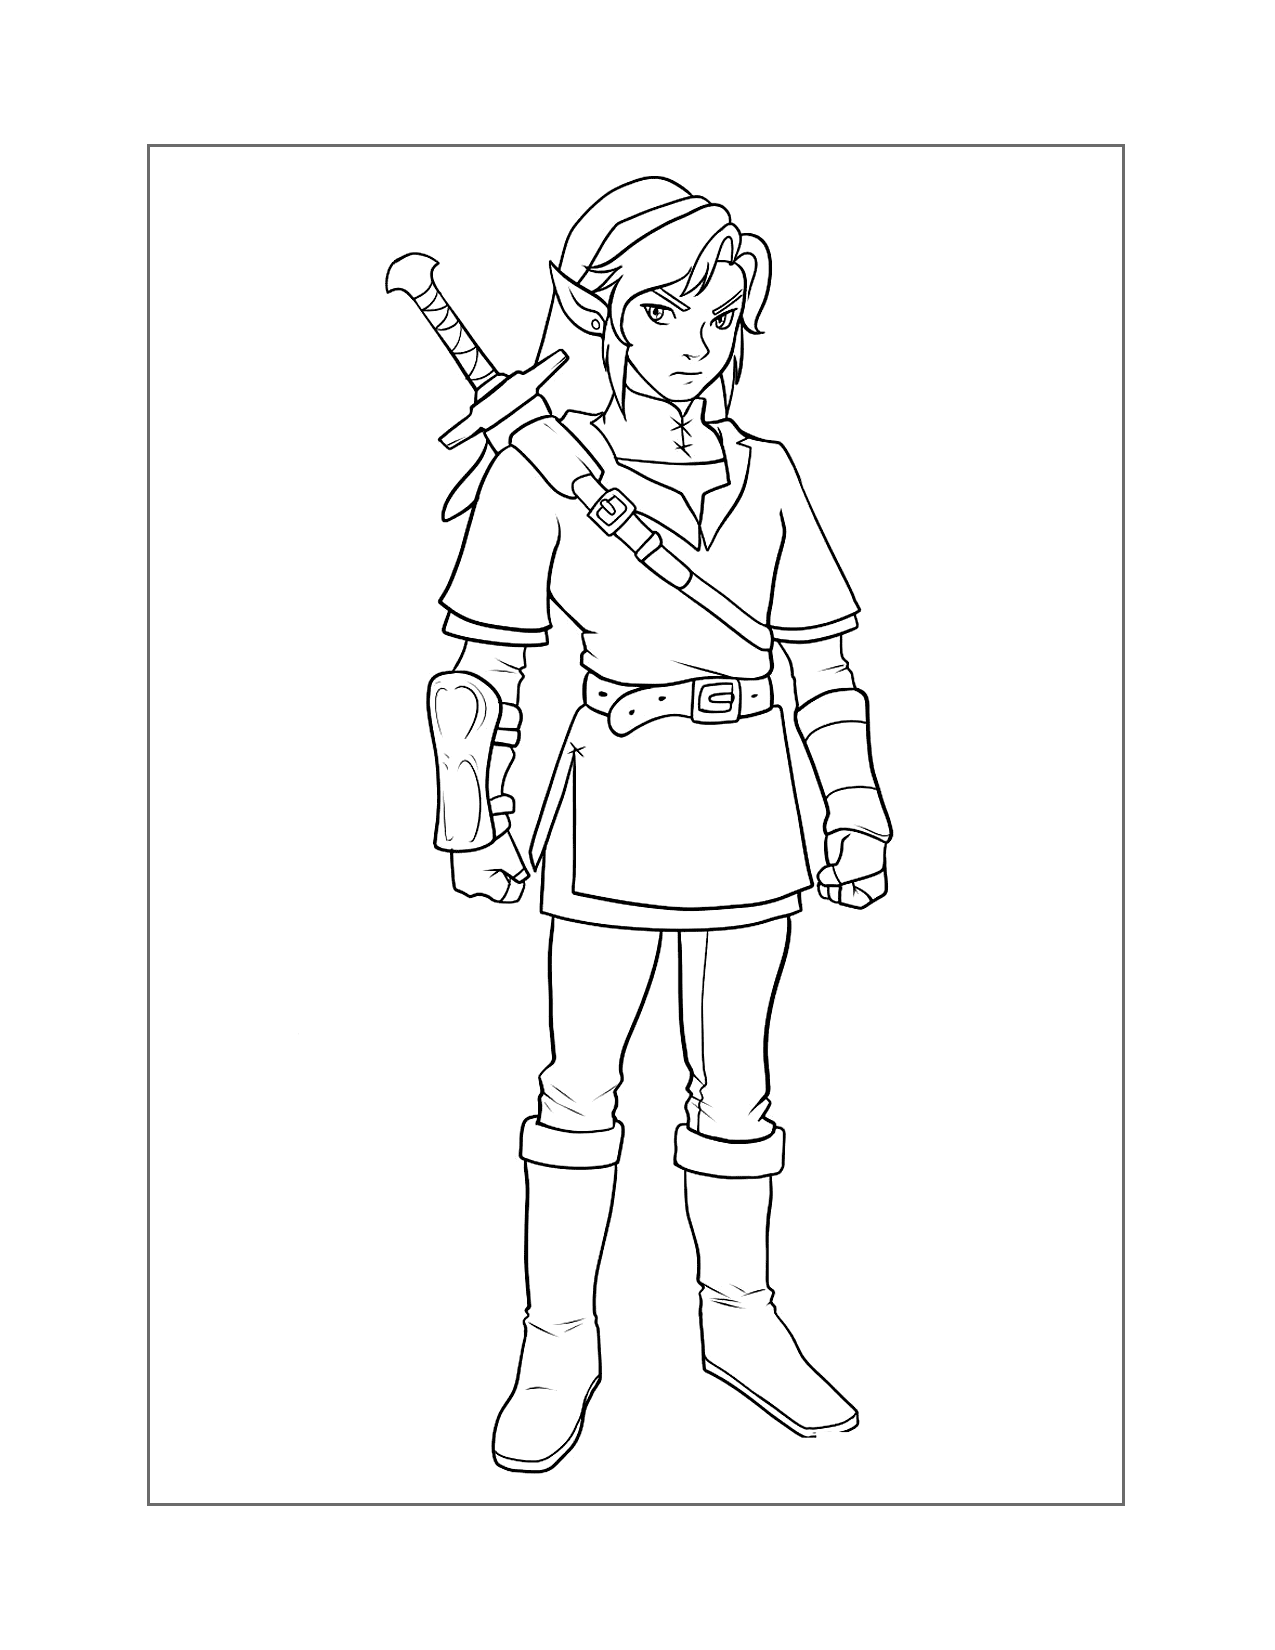 Legend Of Zelda Coloring Pages